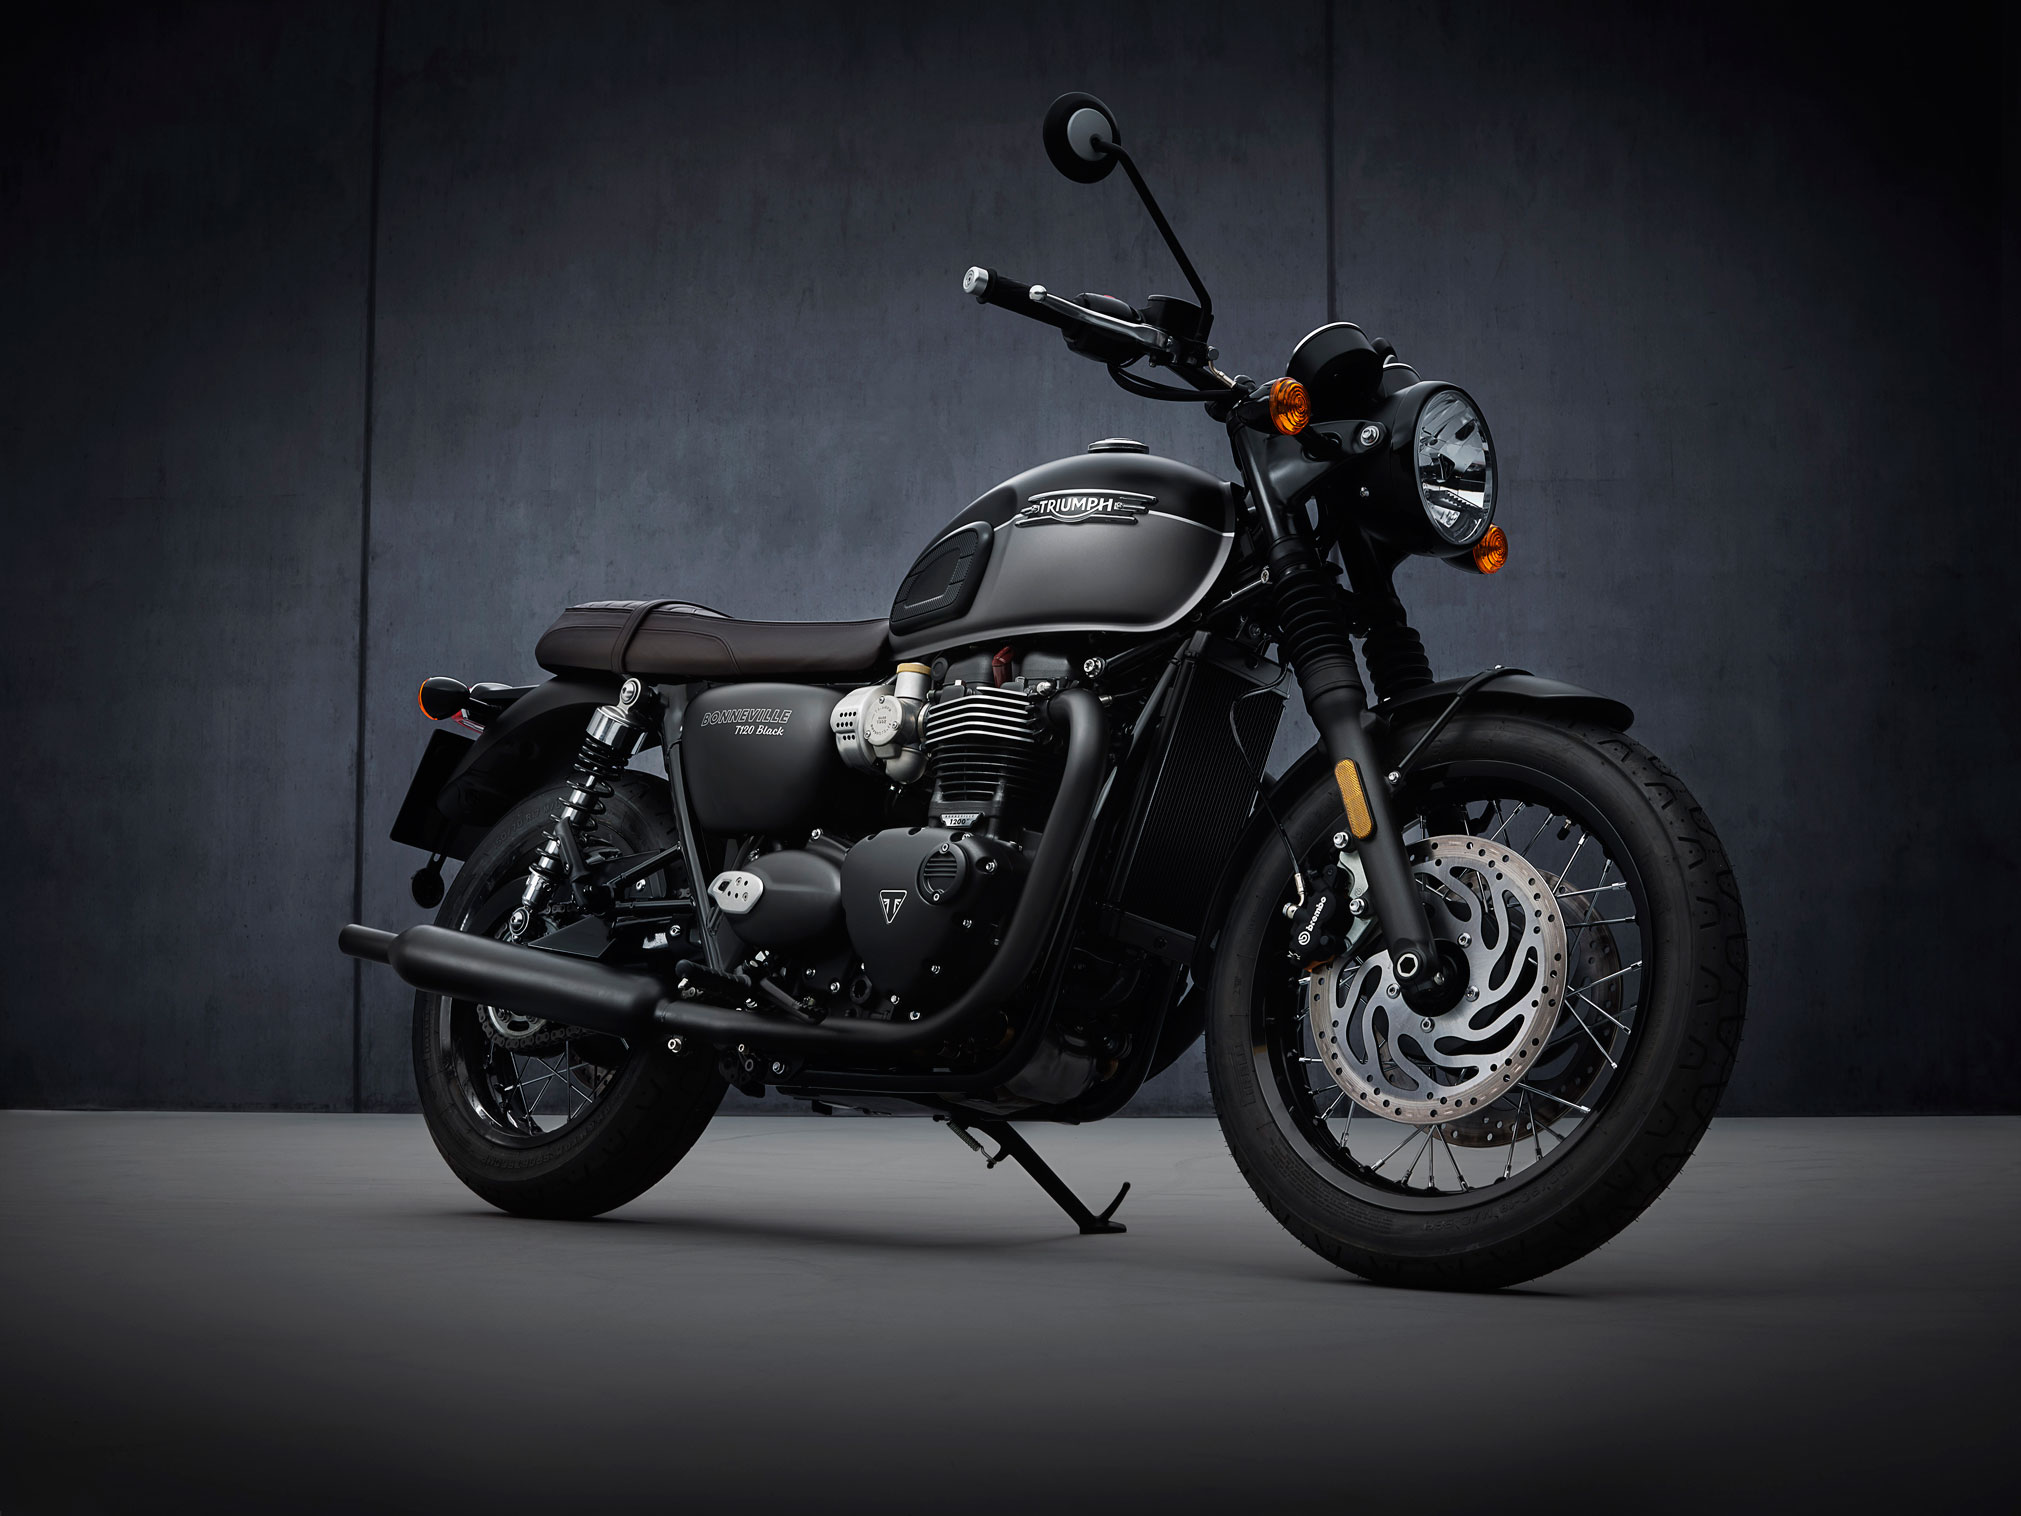 2021 Triumph Bonneville T120 Black Guide • Total Motorcycle